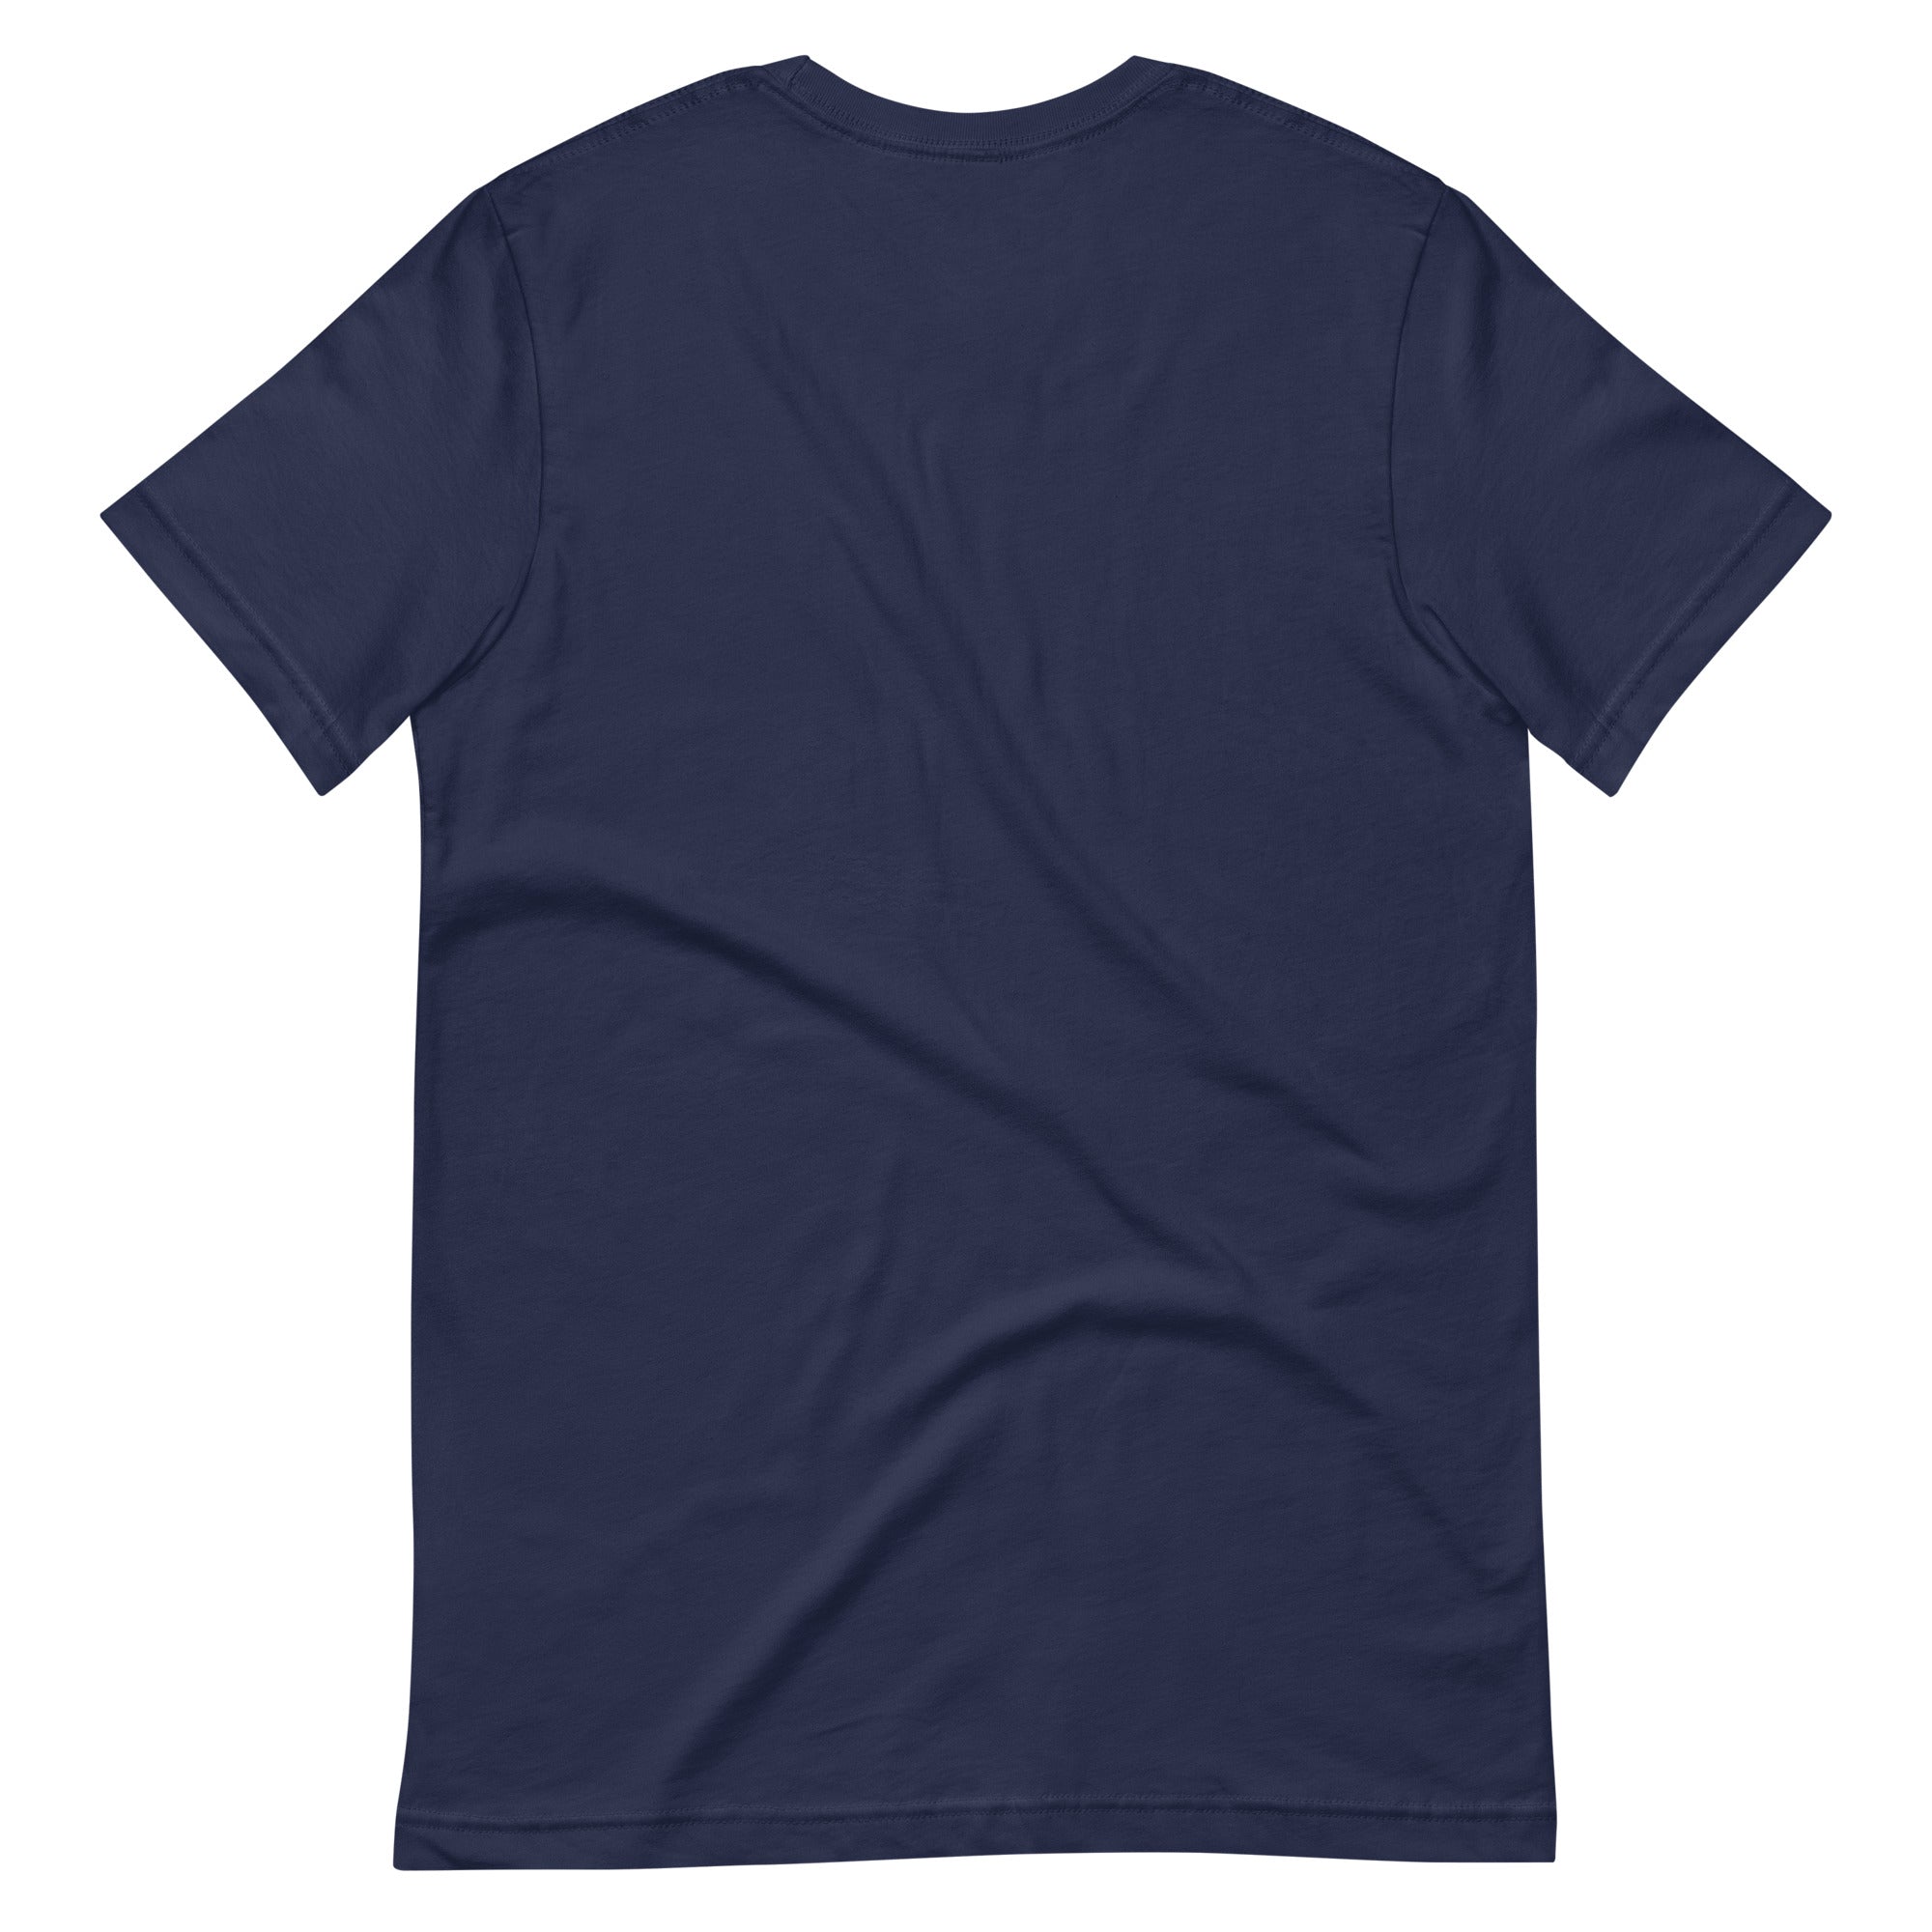 Arches T-Shirt (Navy) - Midtown | Phoenix, AZ